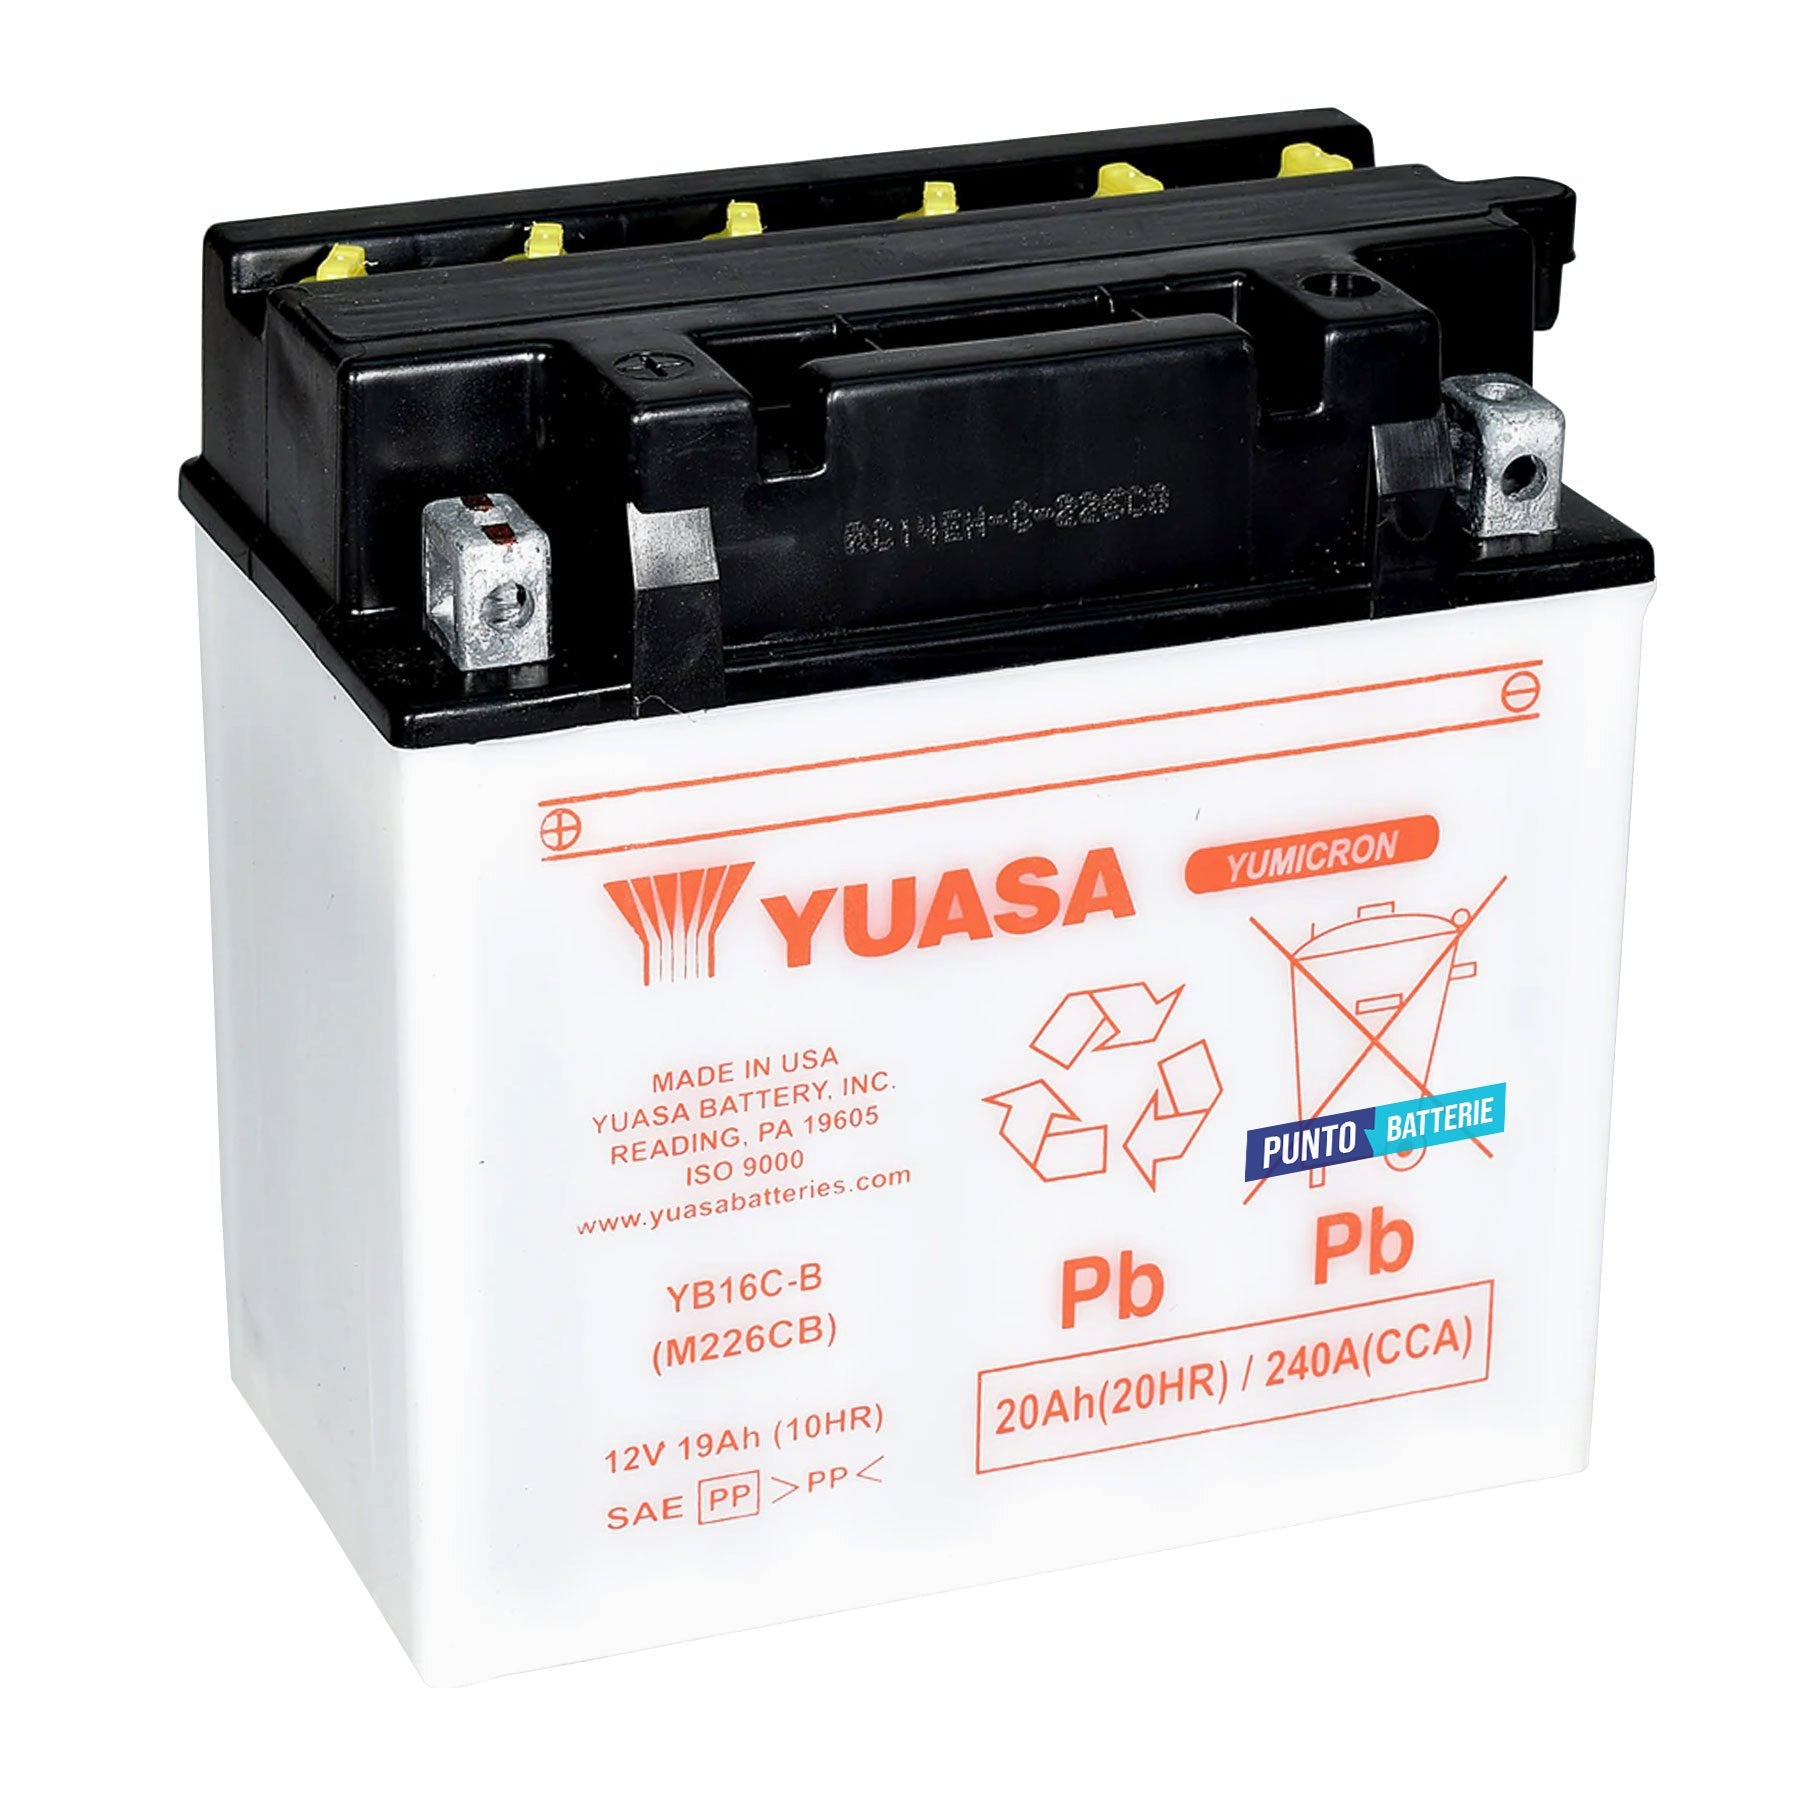 Batteria originale Yuasa Conventional YB16C-B, dimensioni 175 x 100 x 175, polo positivo a sinistra, 12 volt, 19 amperora, 240 ampere. Batteria per moto, scooter e powersport.